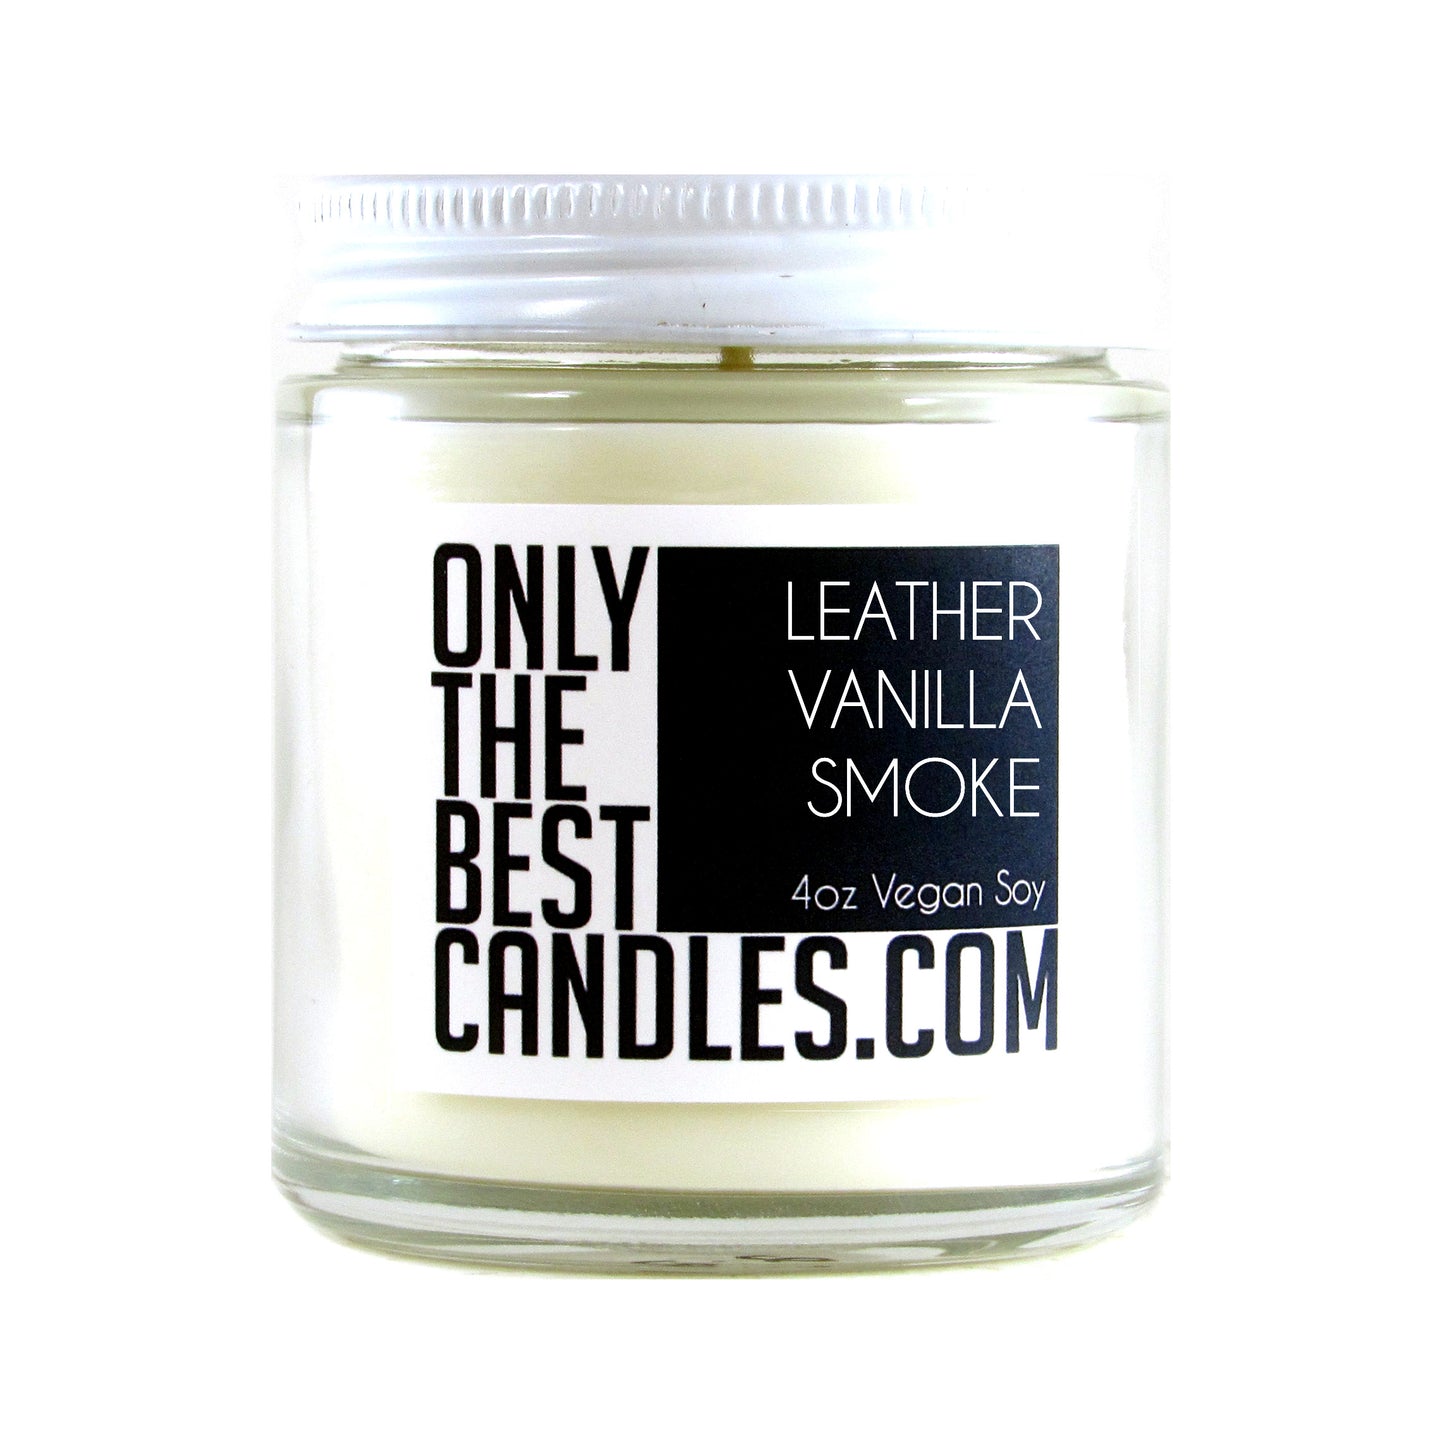 Leather Vanilla Smoke 4oz Candle